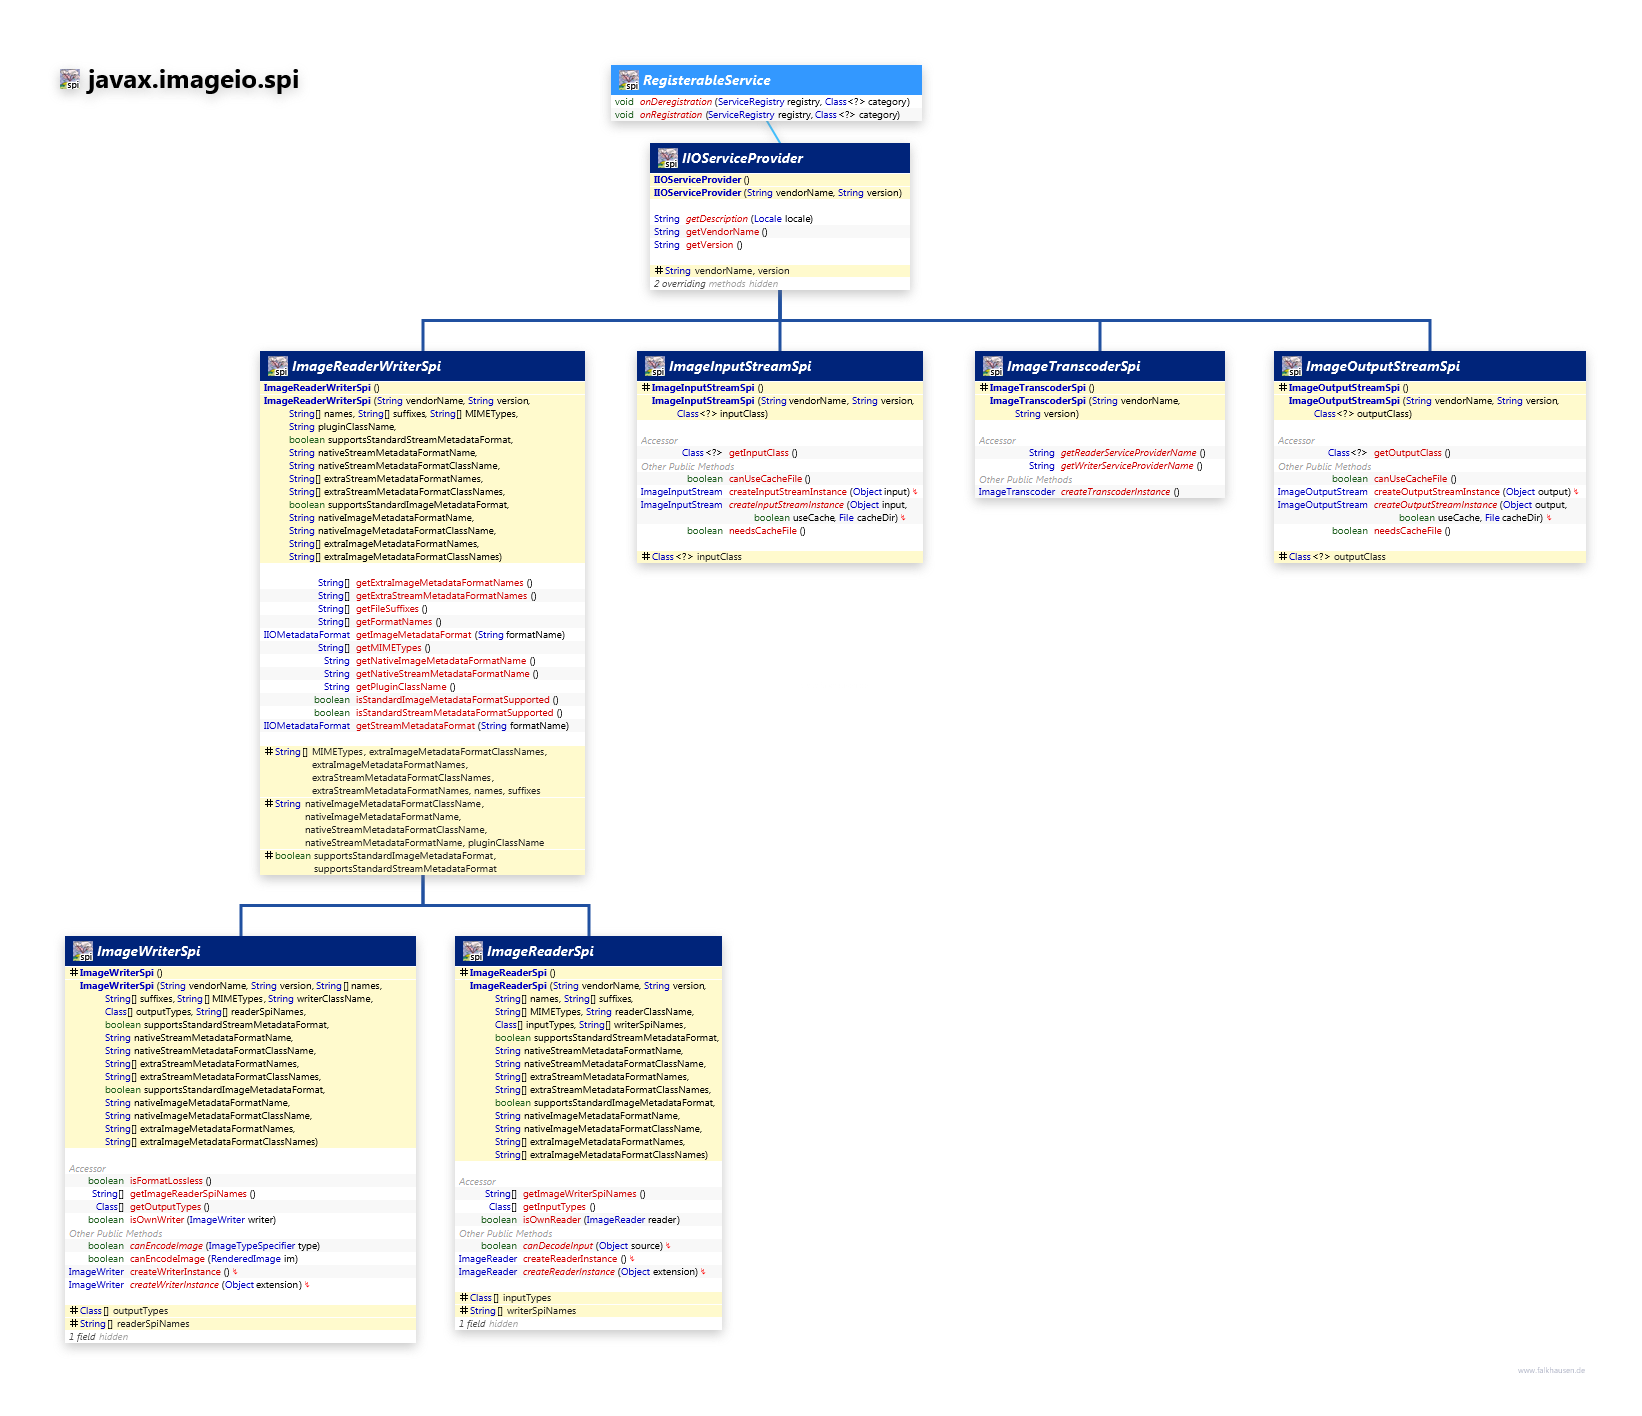 javax.imageio.spi ServiceProvider class diagram and api documentation for Java 8